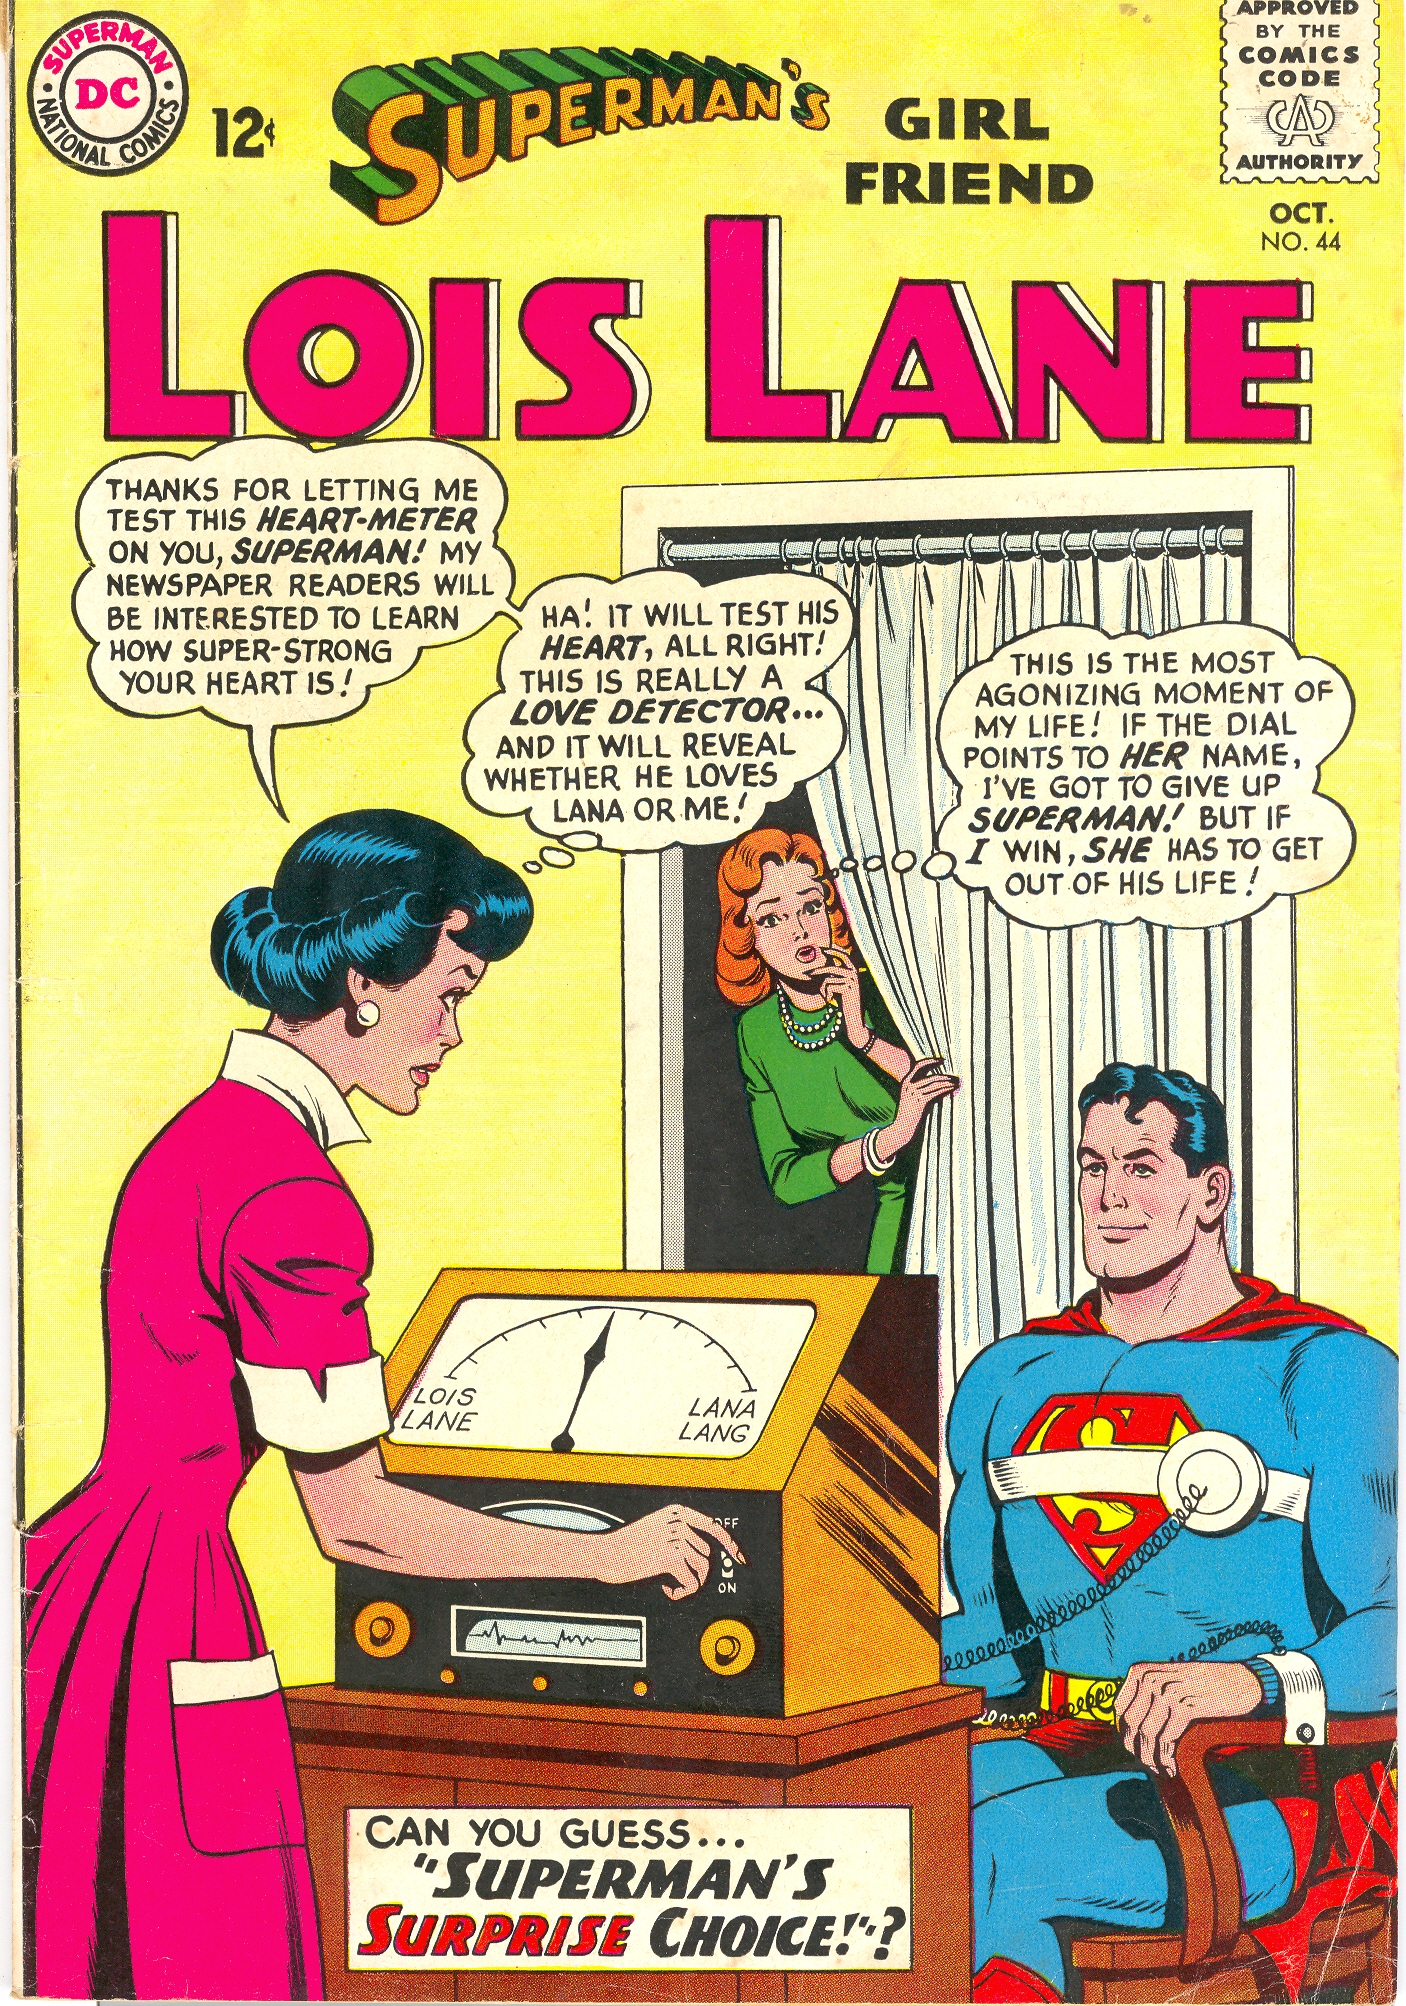 Lois Lane wielding a love meter